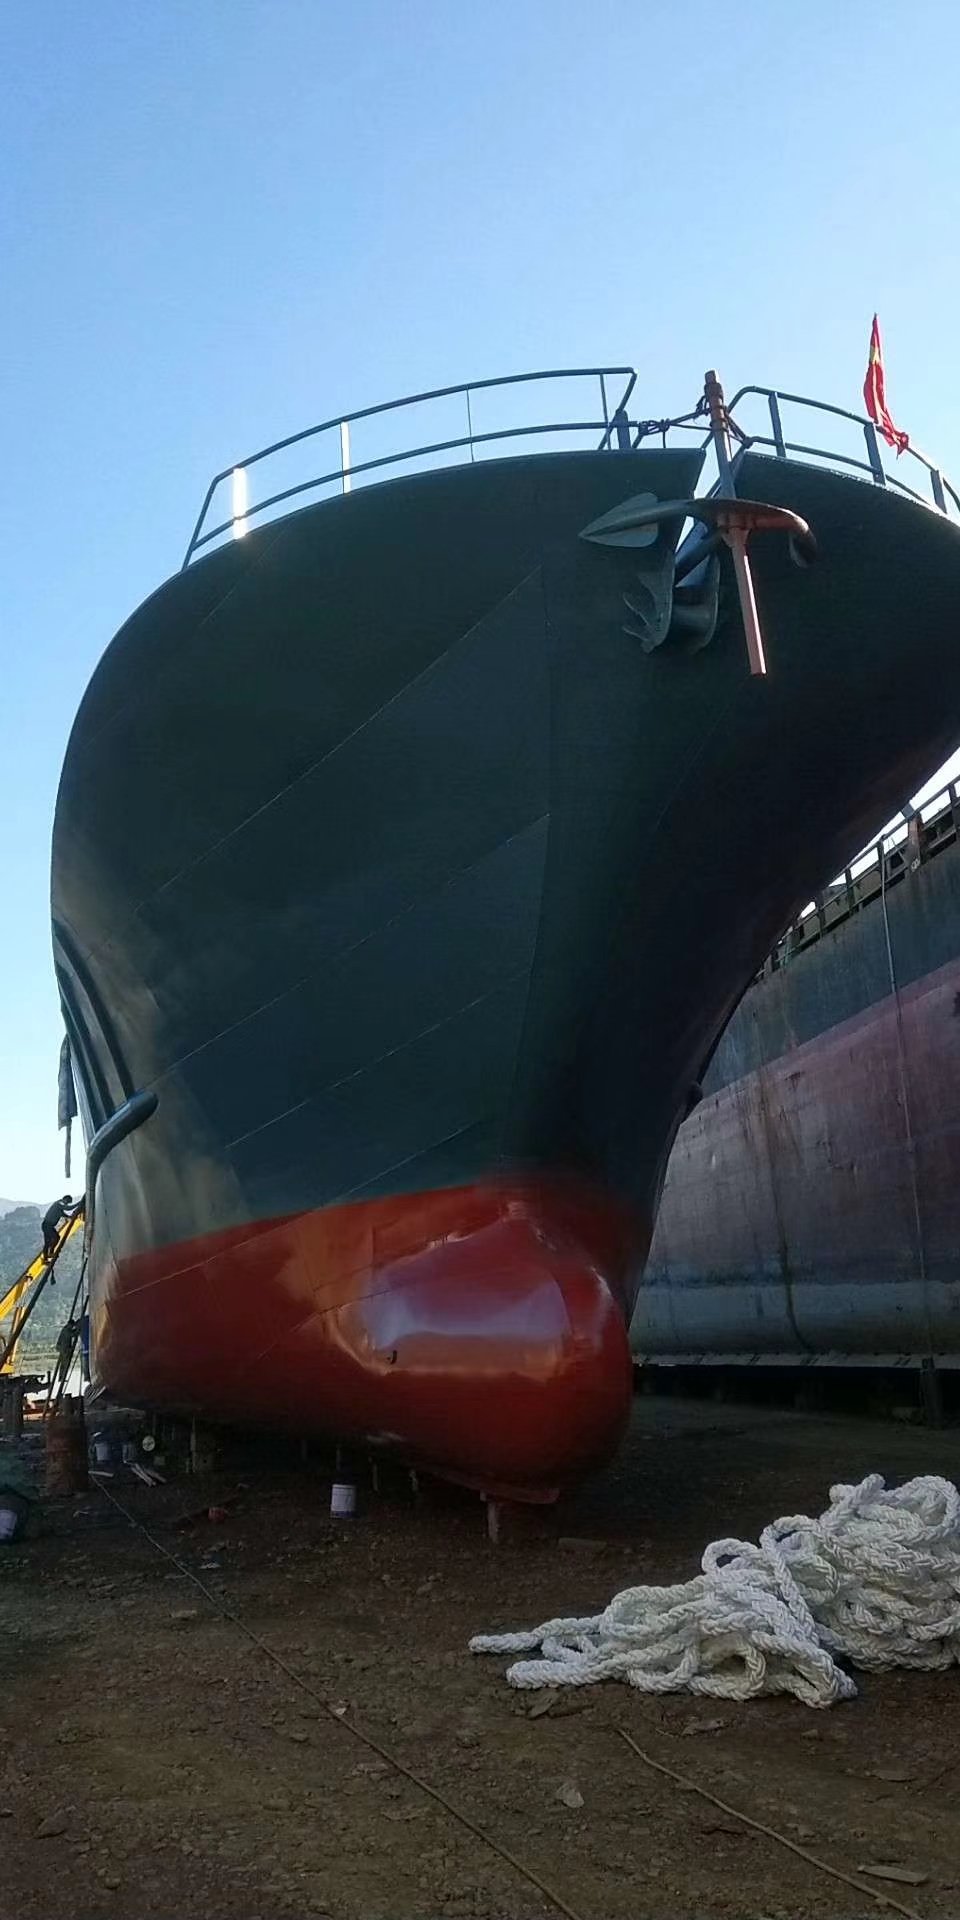 680吨水船